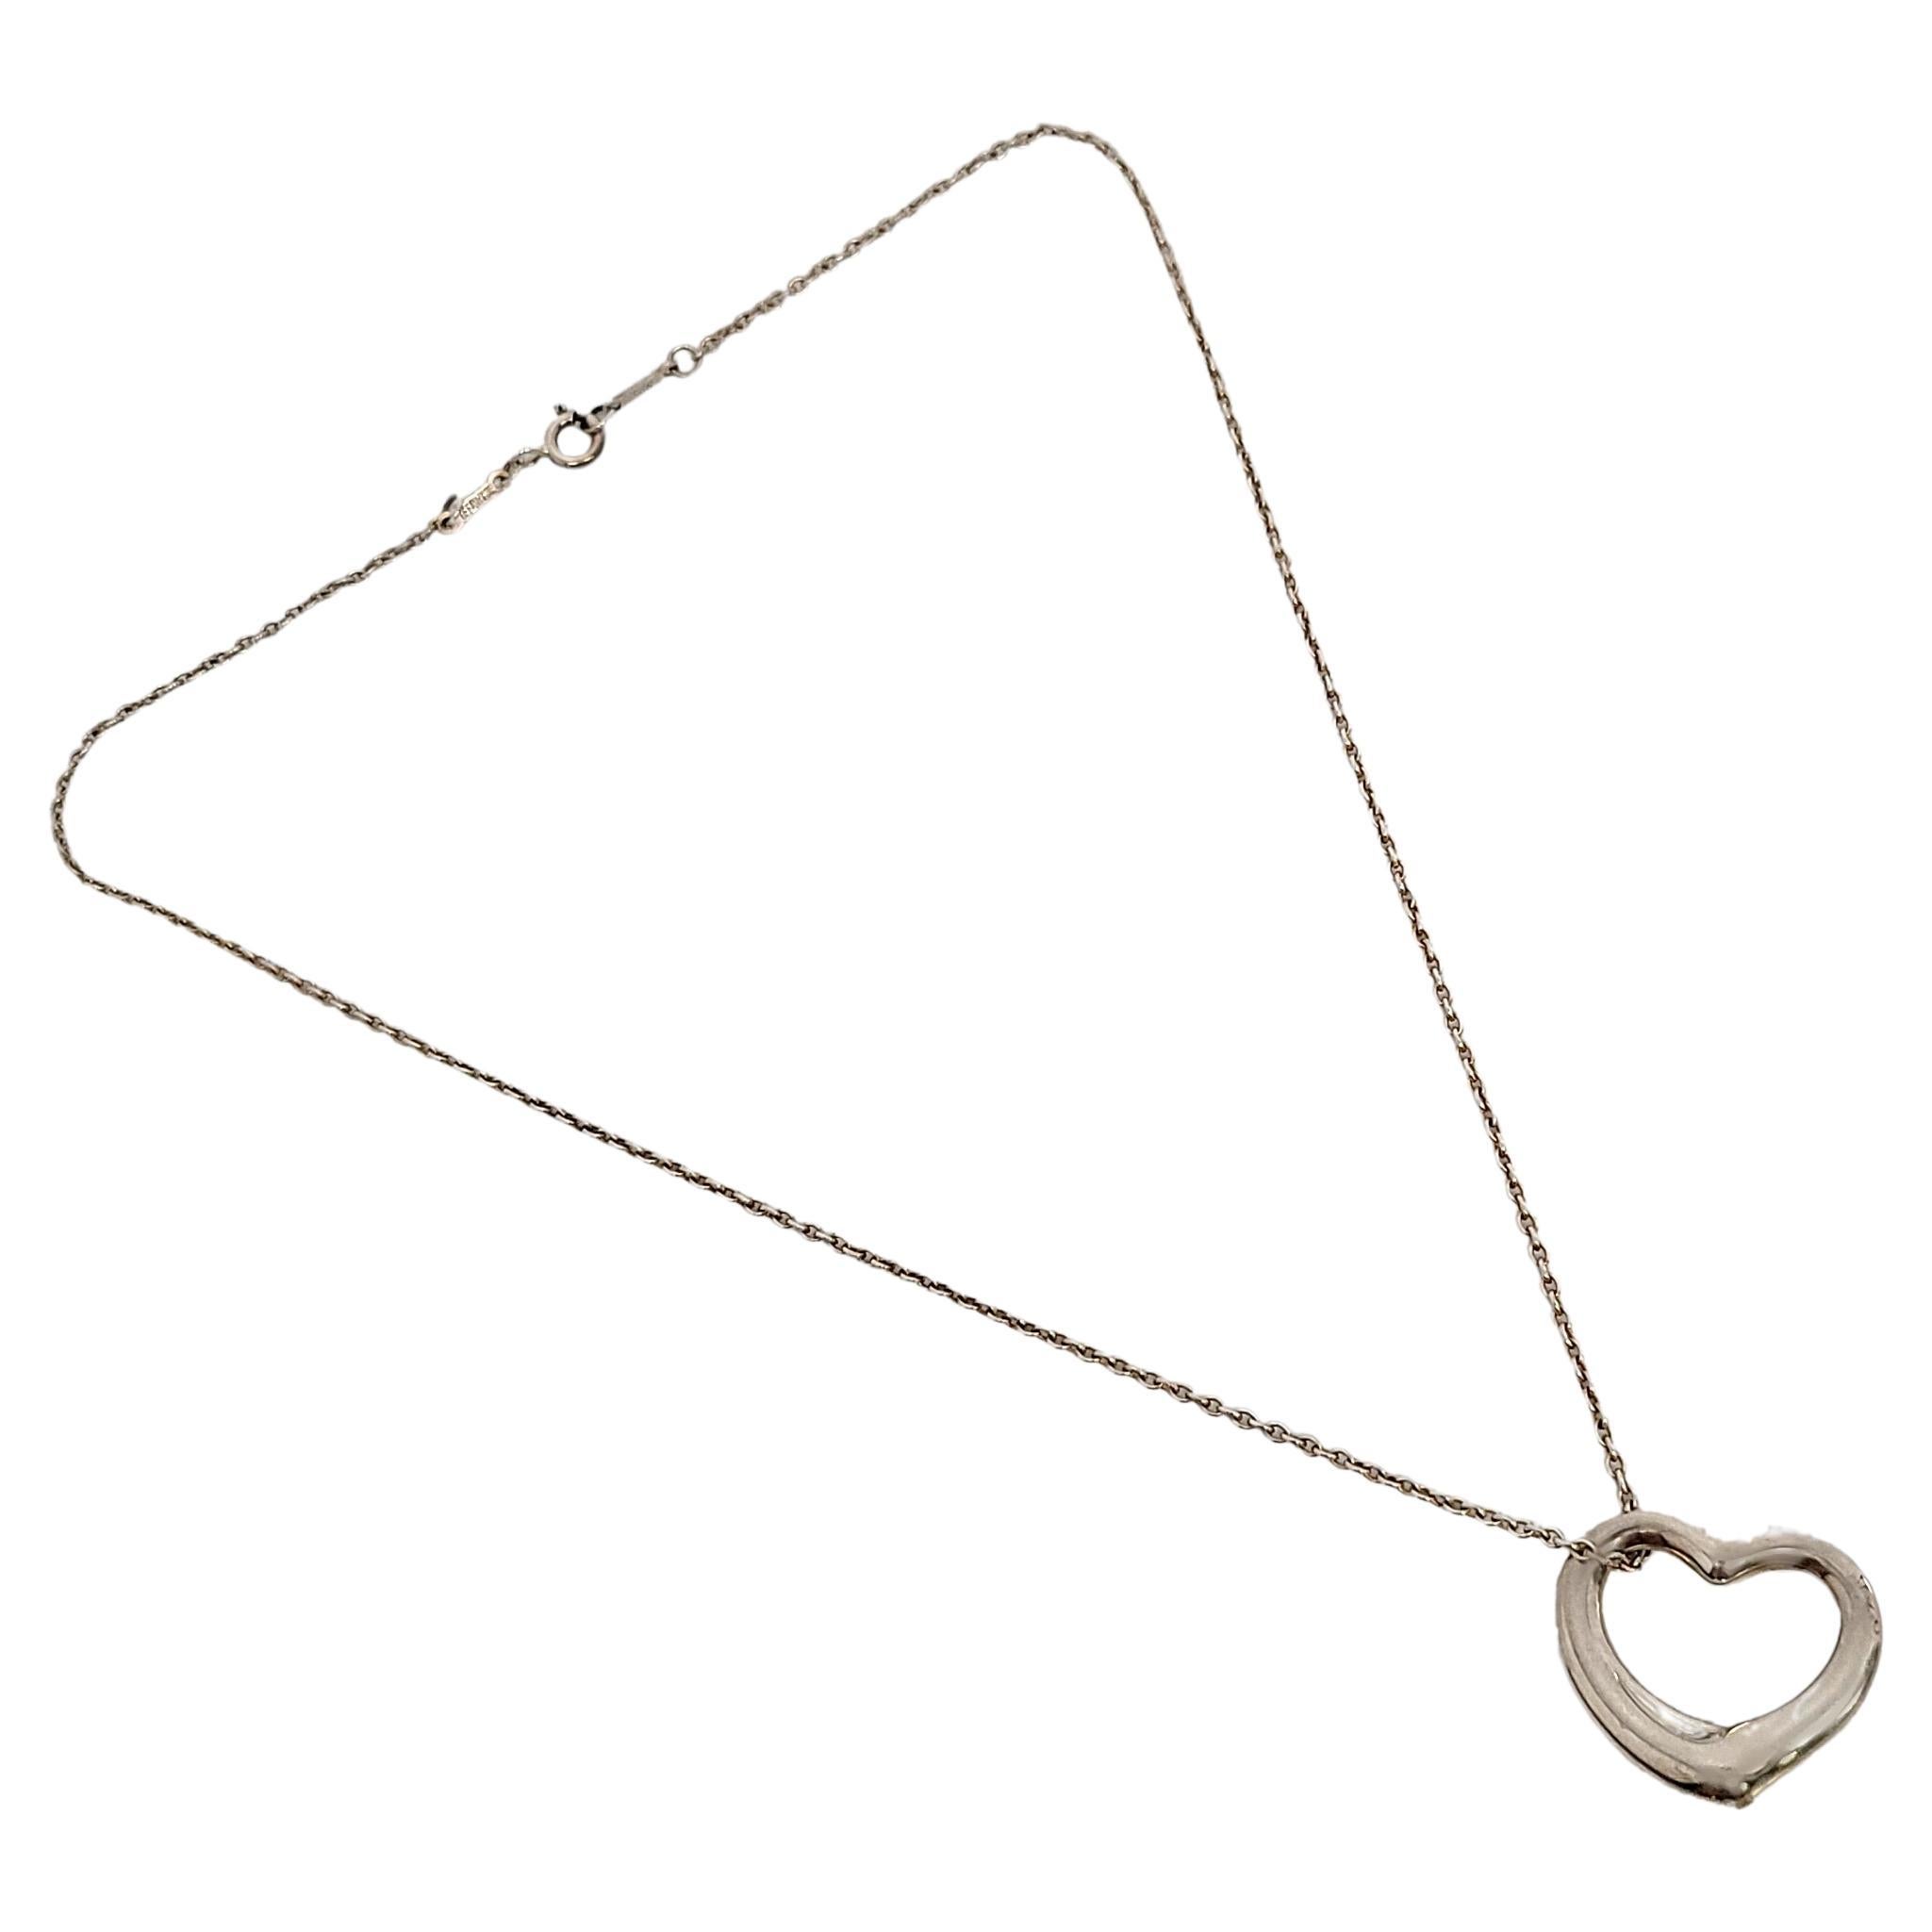 Tiffany & Co. Elsa Peretti Sterling Silver Open Heart Pendant w/Chain Necklace